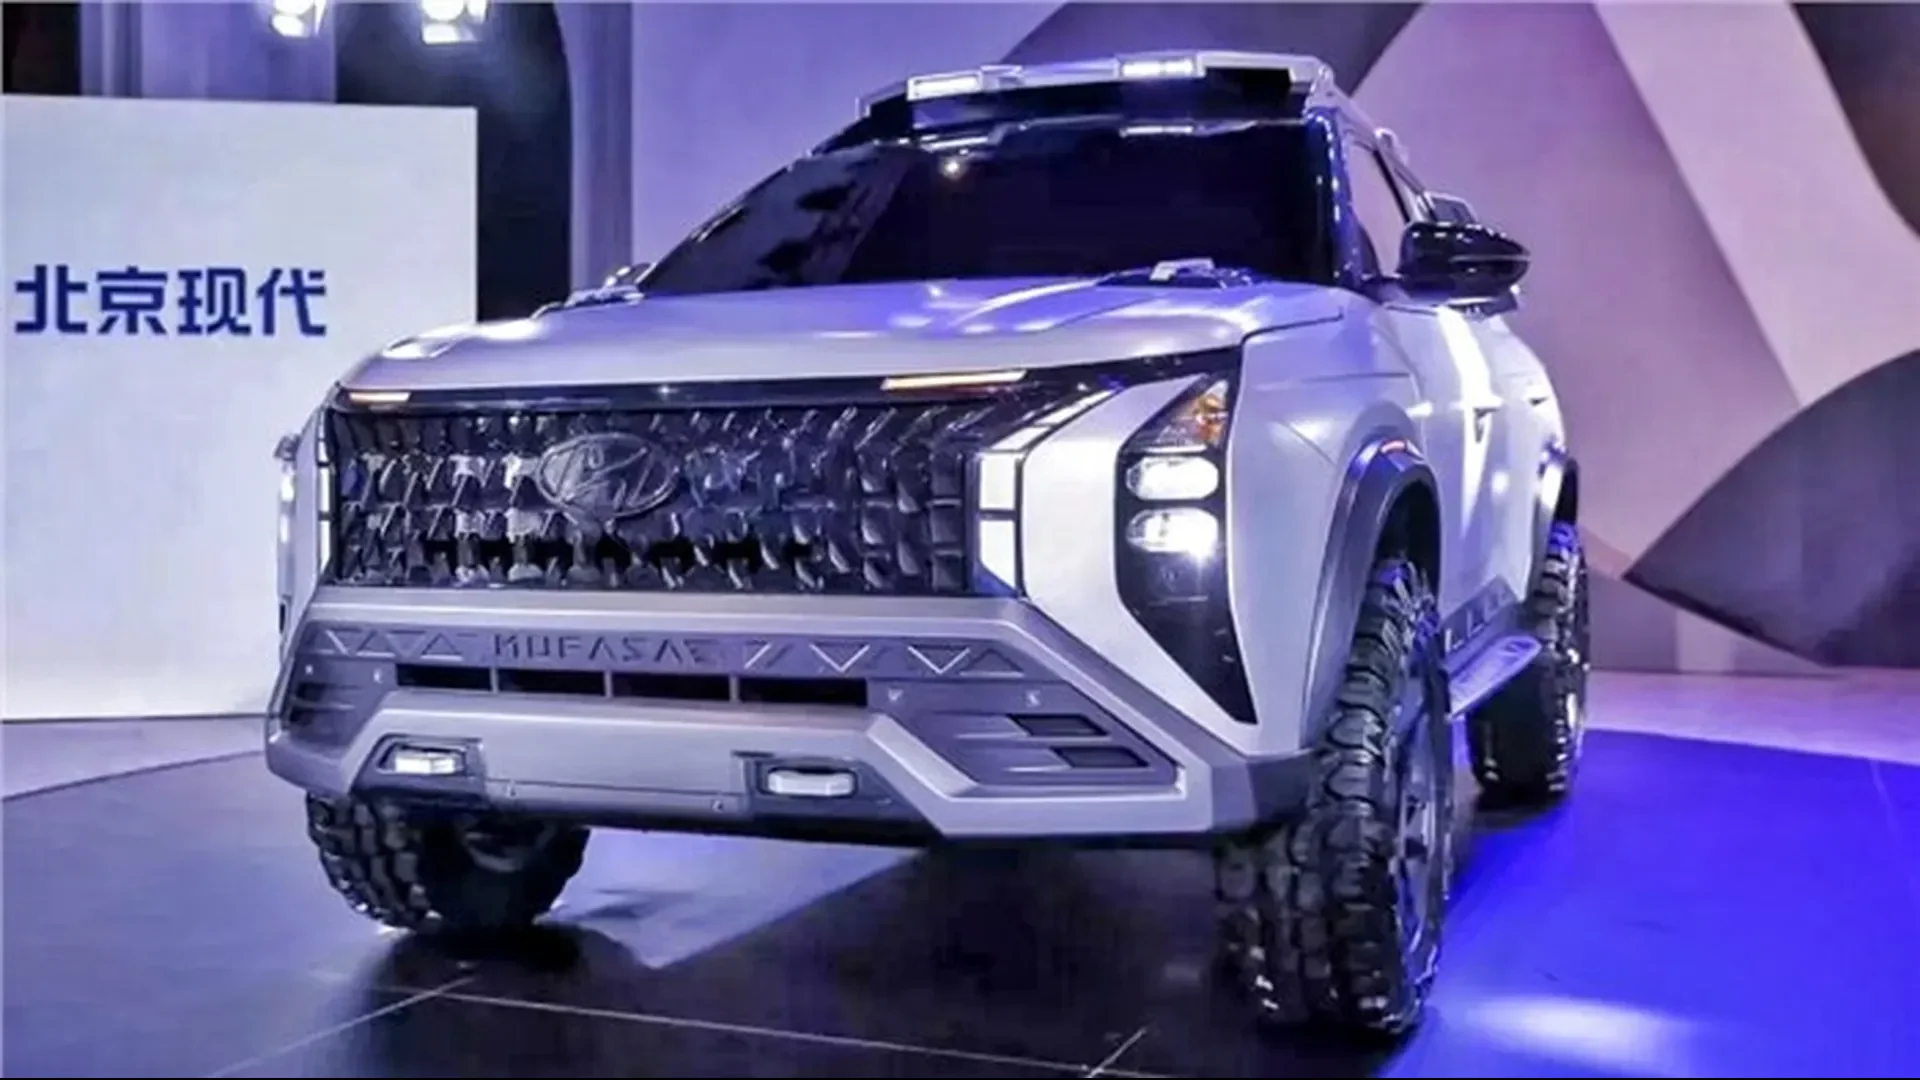 Este Hyundai Mufasa Adventure Concept anticipa el próximo SUV de la marca para el mercado chino